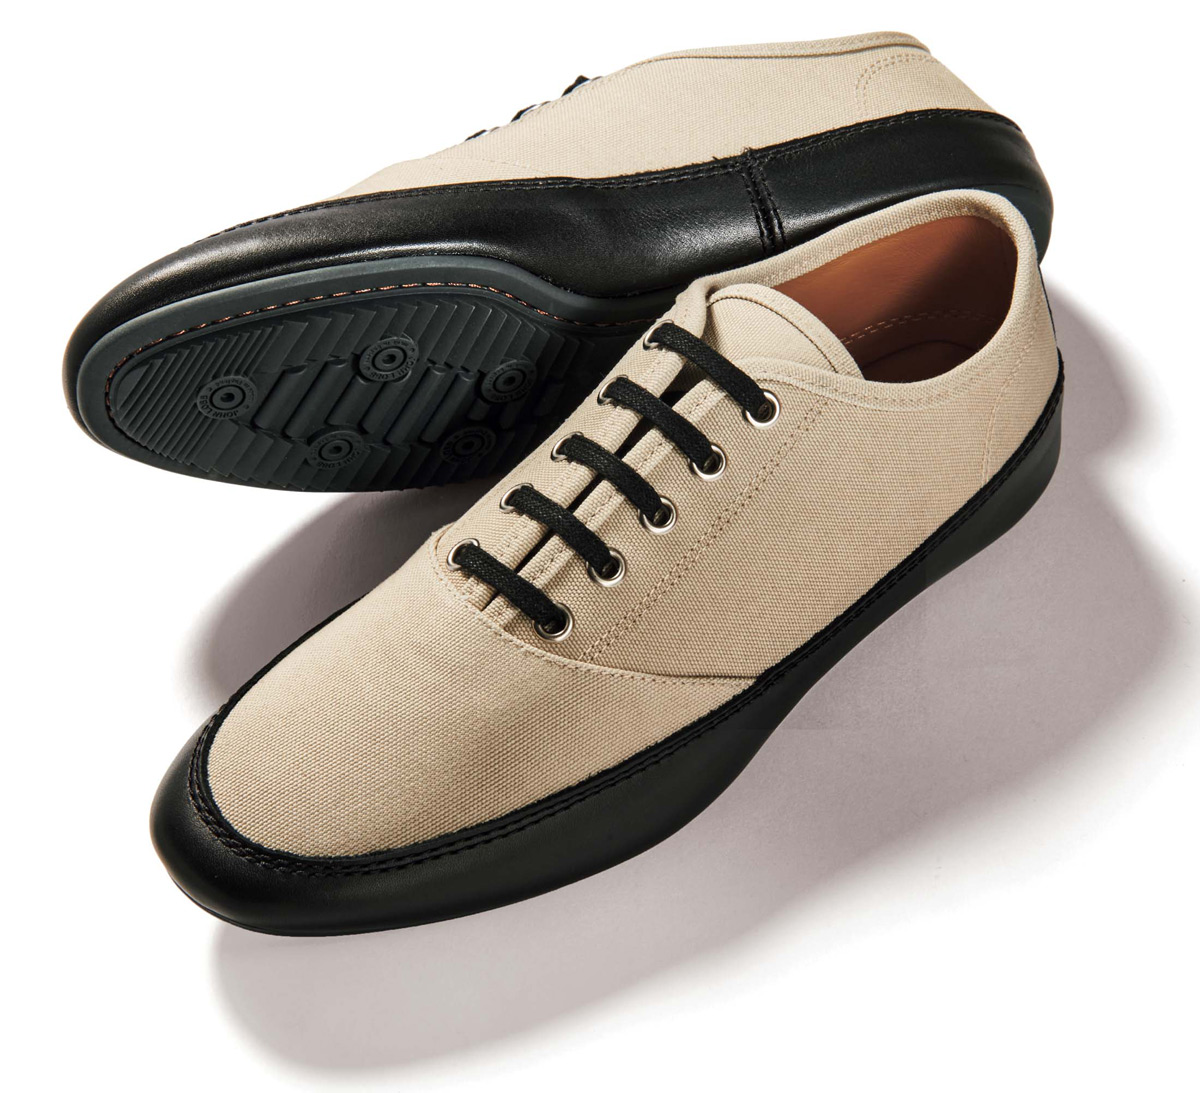 英国靴の名門〈ジョンロブ〉が仕立てればスニーカーも名靴級の上品さ!